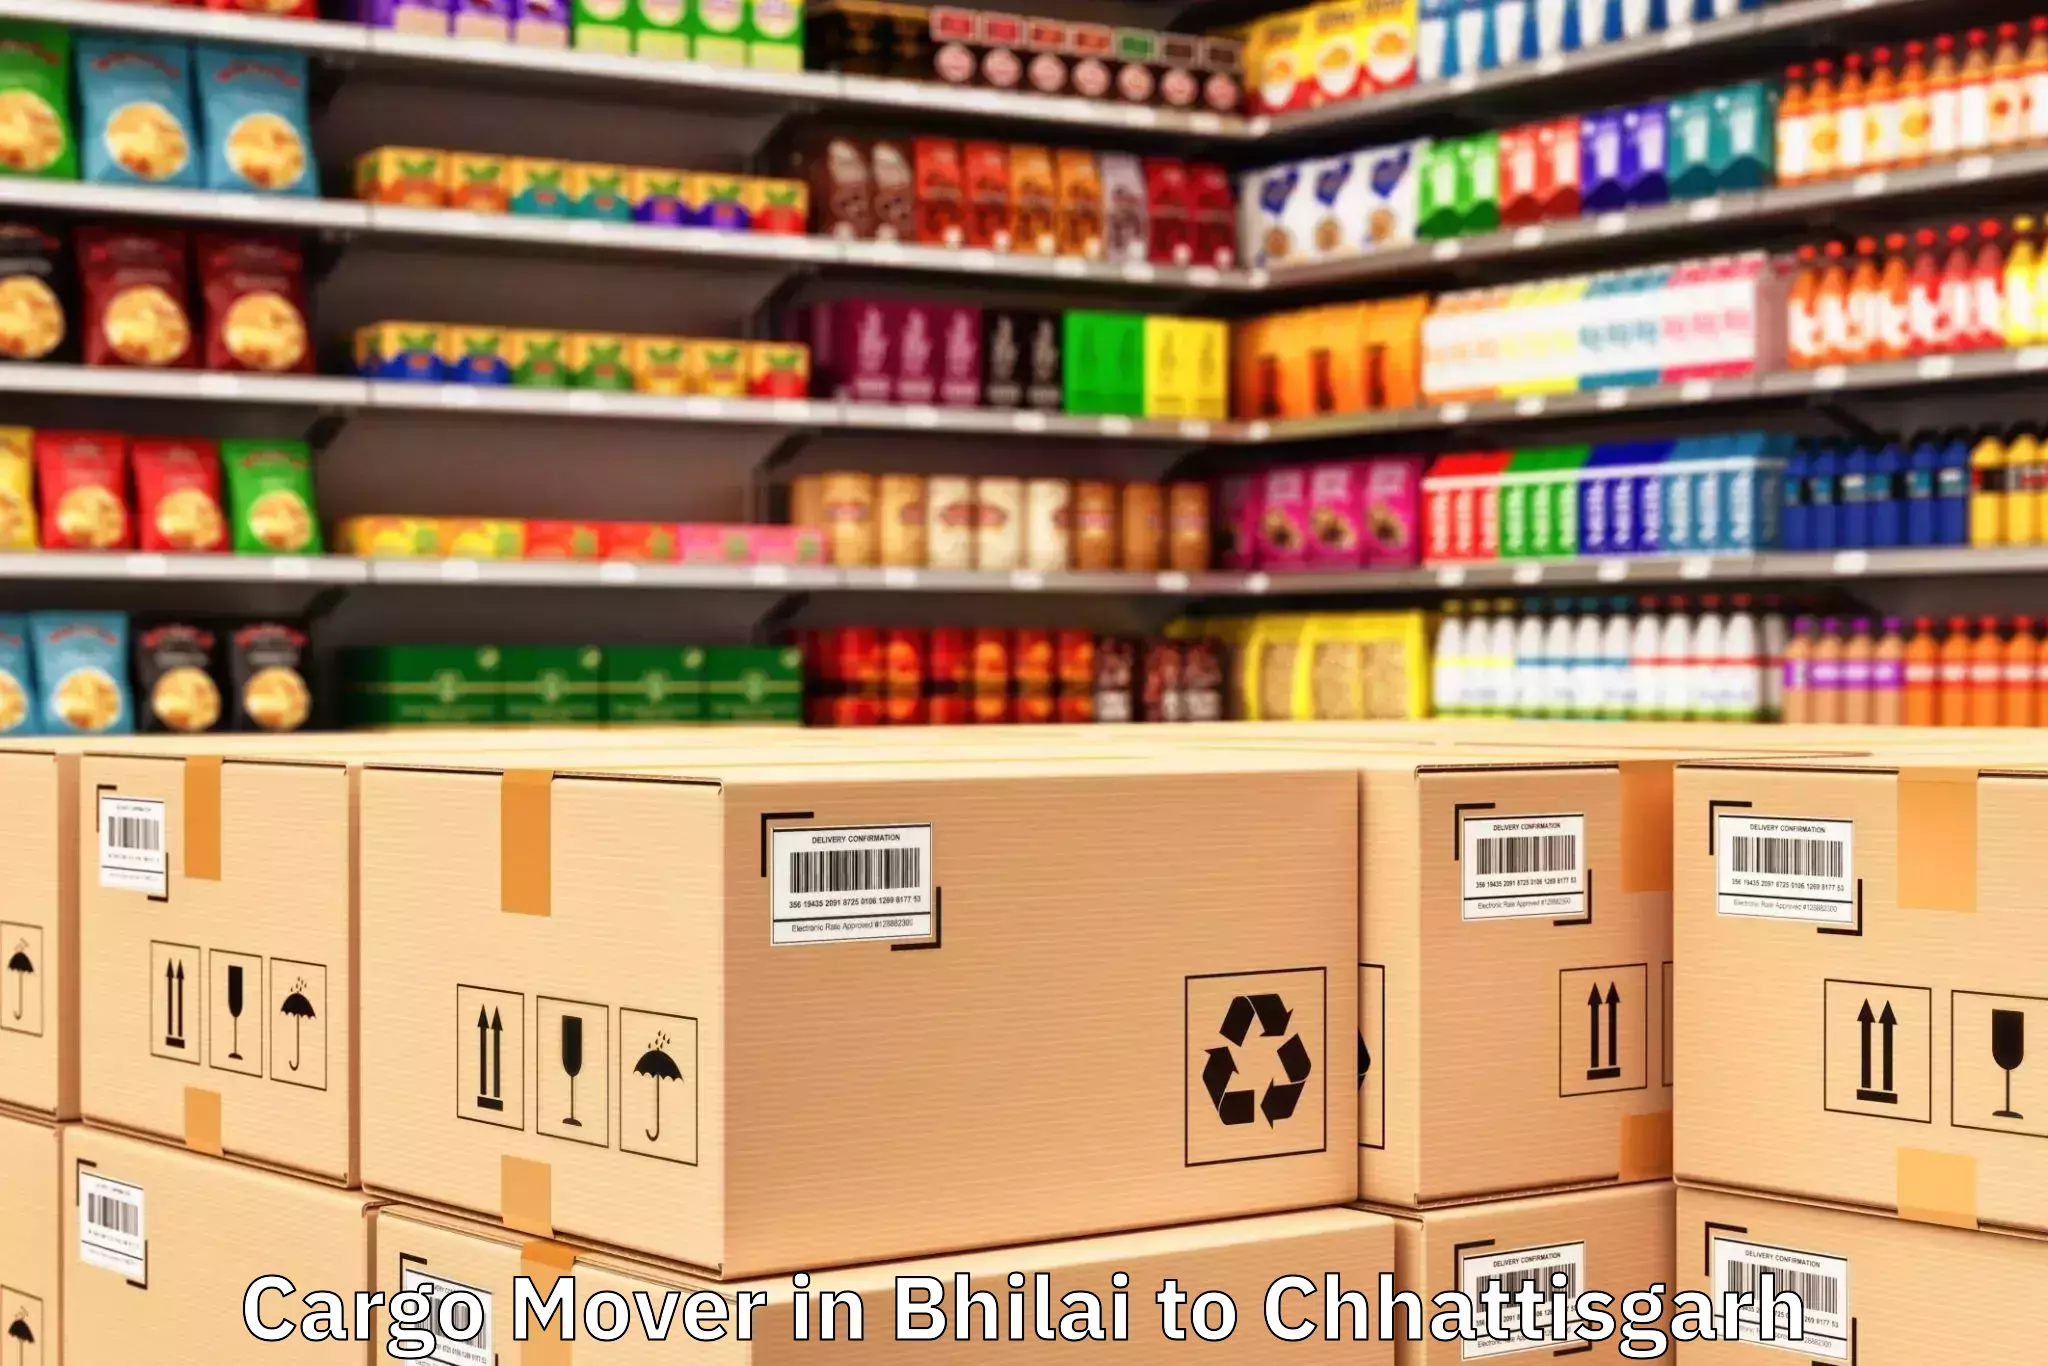 Top Bhilai to Chhattisgarh Cargo Mover Available